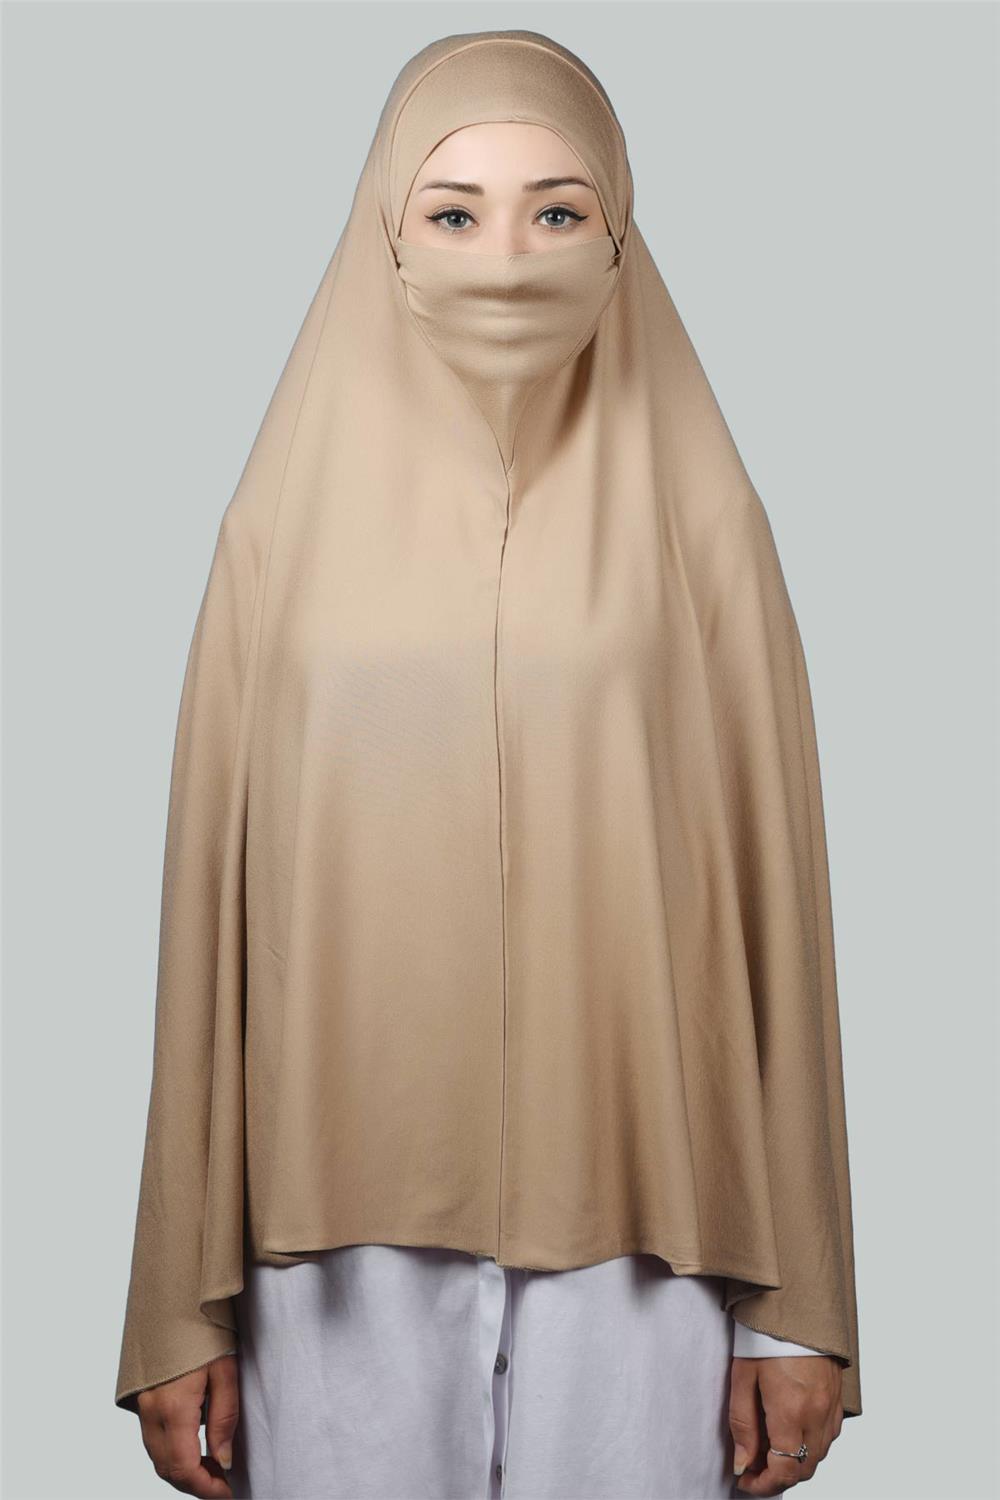 Hazır Türban Peçeli Pratik Eşarp Tesettür Nikaplı Hijab - Namaz Örtüsü Sufle  (5XL) - Koyu Bej